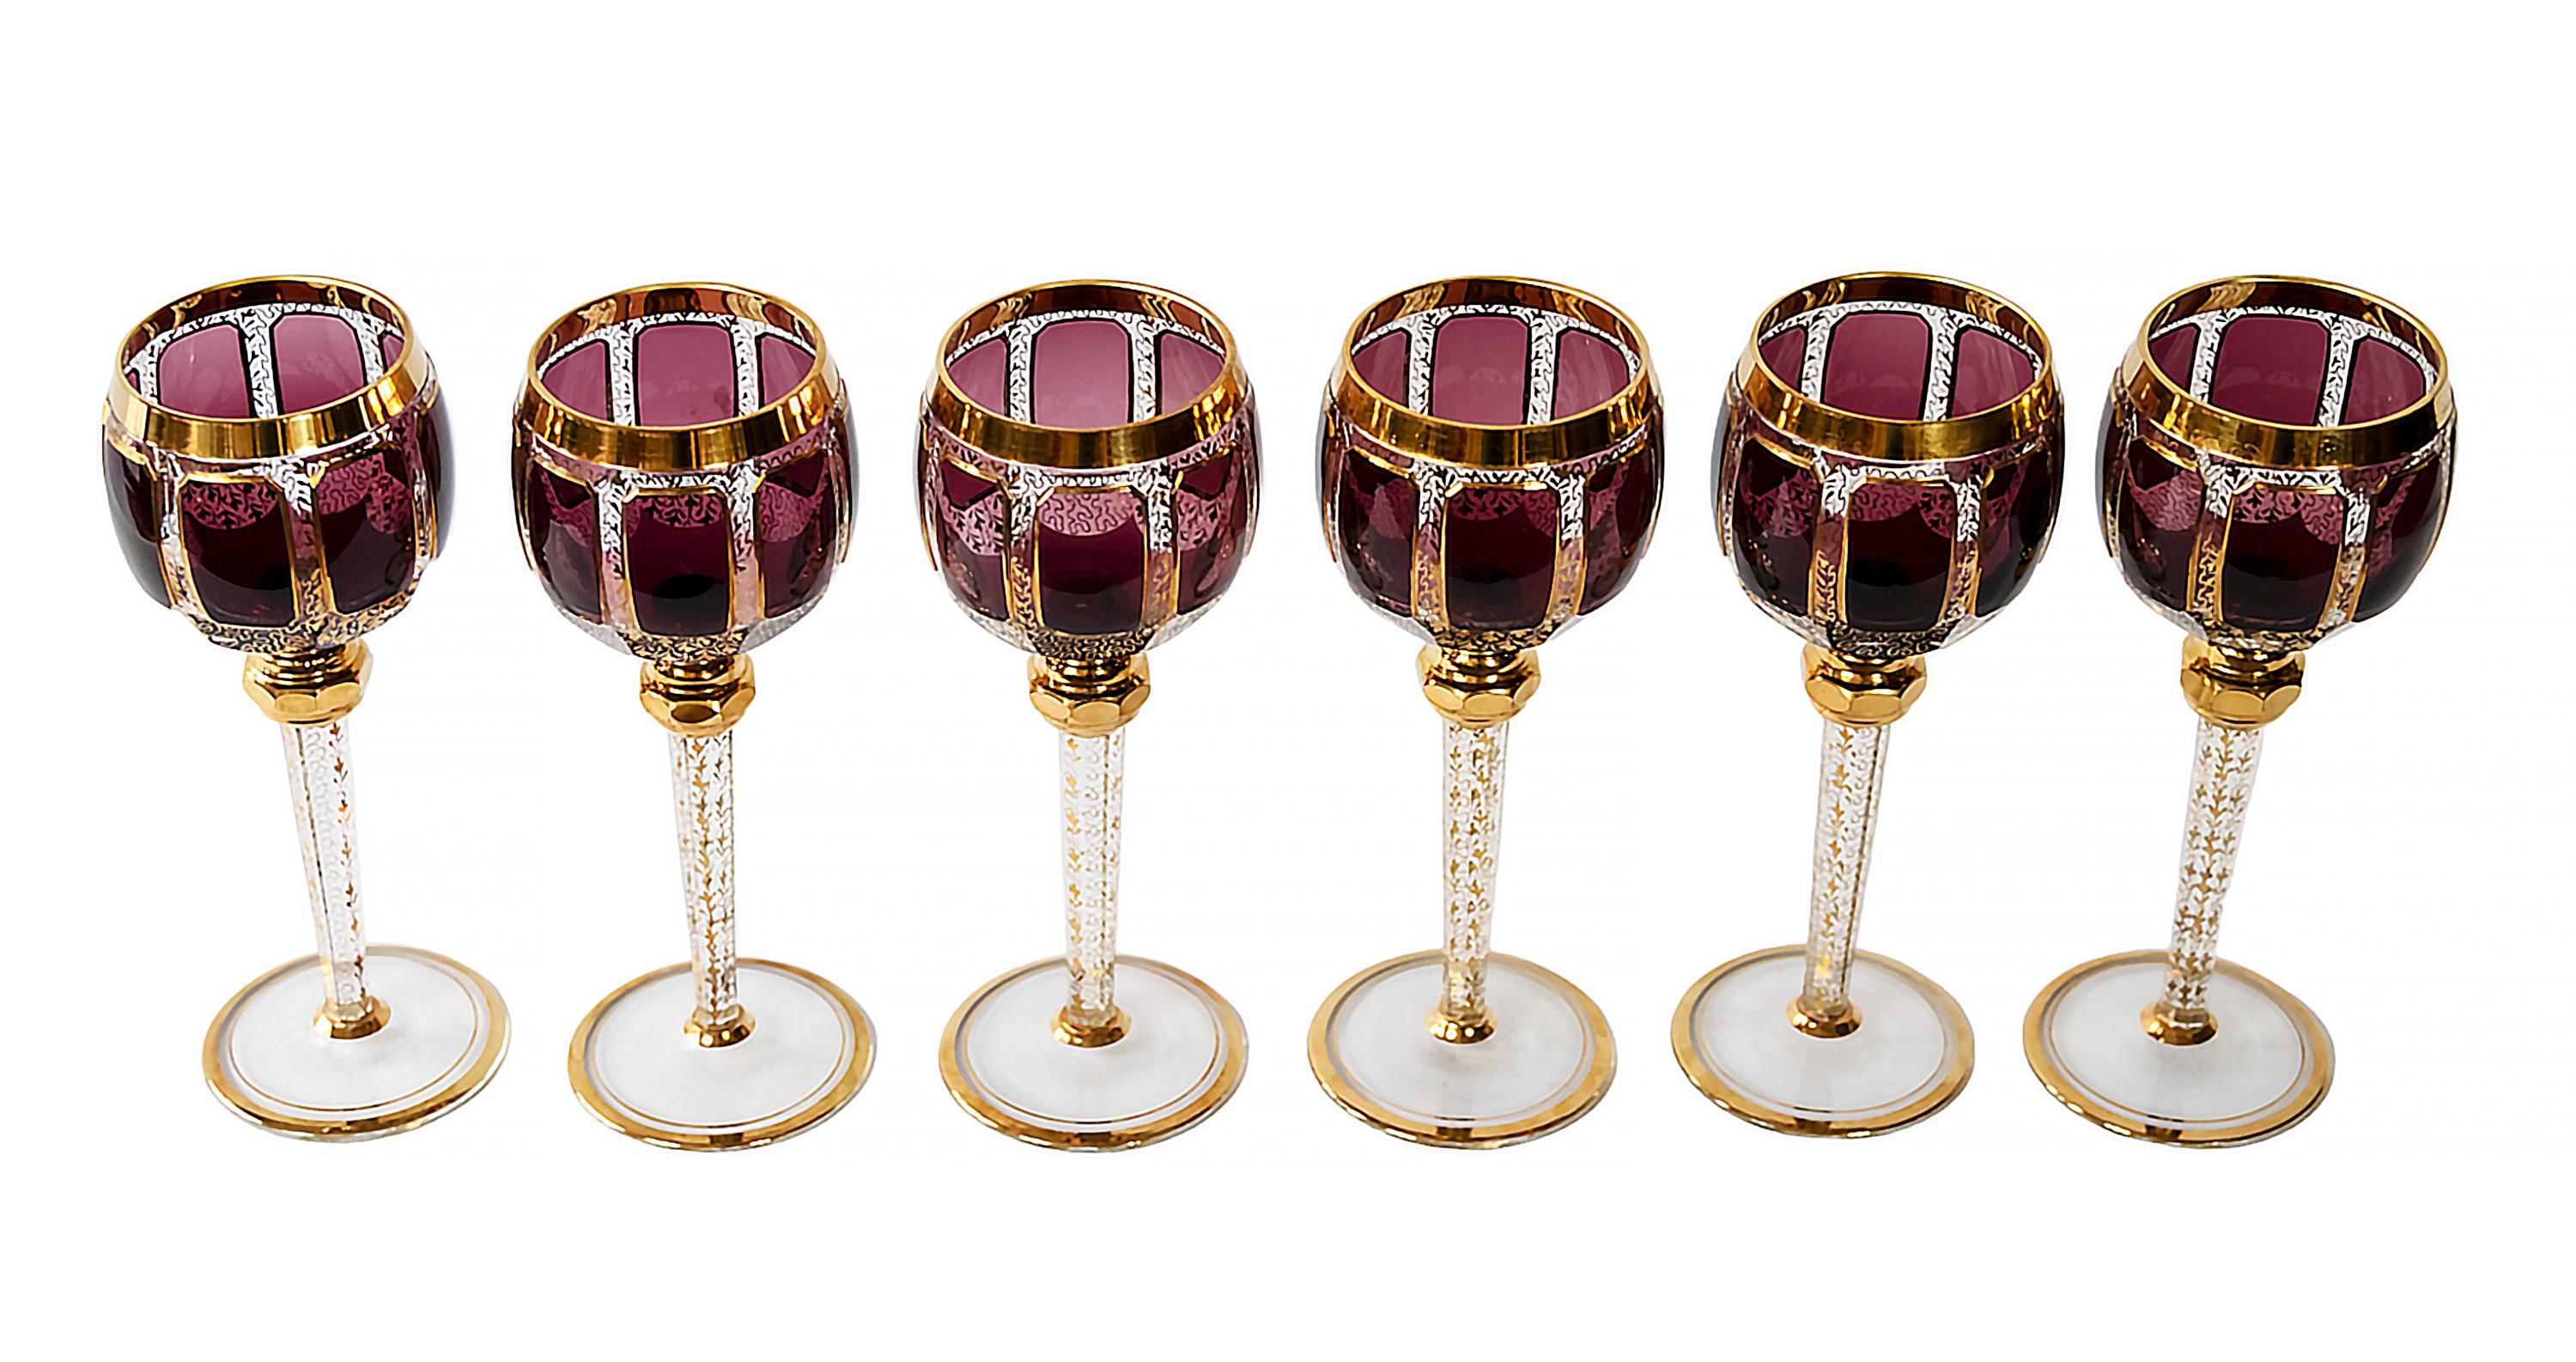 Der Satz von 6 Stück. Böhmische Weingläser.
Jedes Glas ist transparent und mit dunklem amethyst-/burgunderfarbenem Glas, vergoldeten Zierleisten und einem goldenen Muster durch das Glas verziert.
Sehr guter/exzellenter Vintage-Zustand.

 